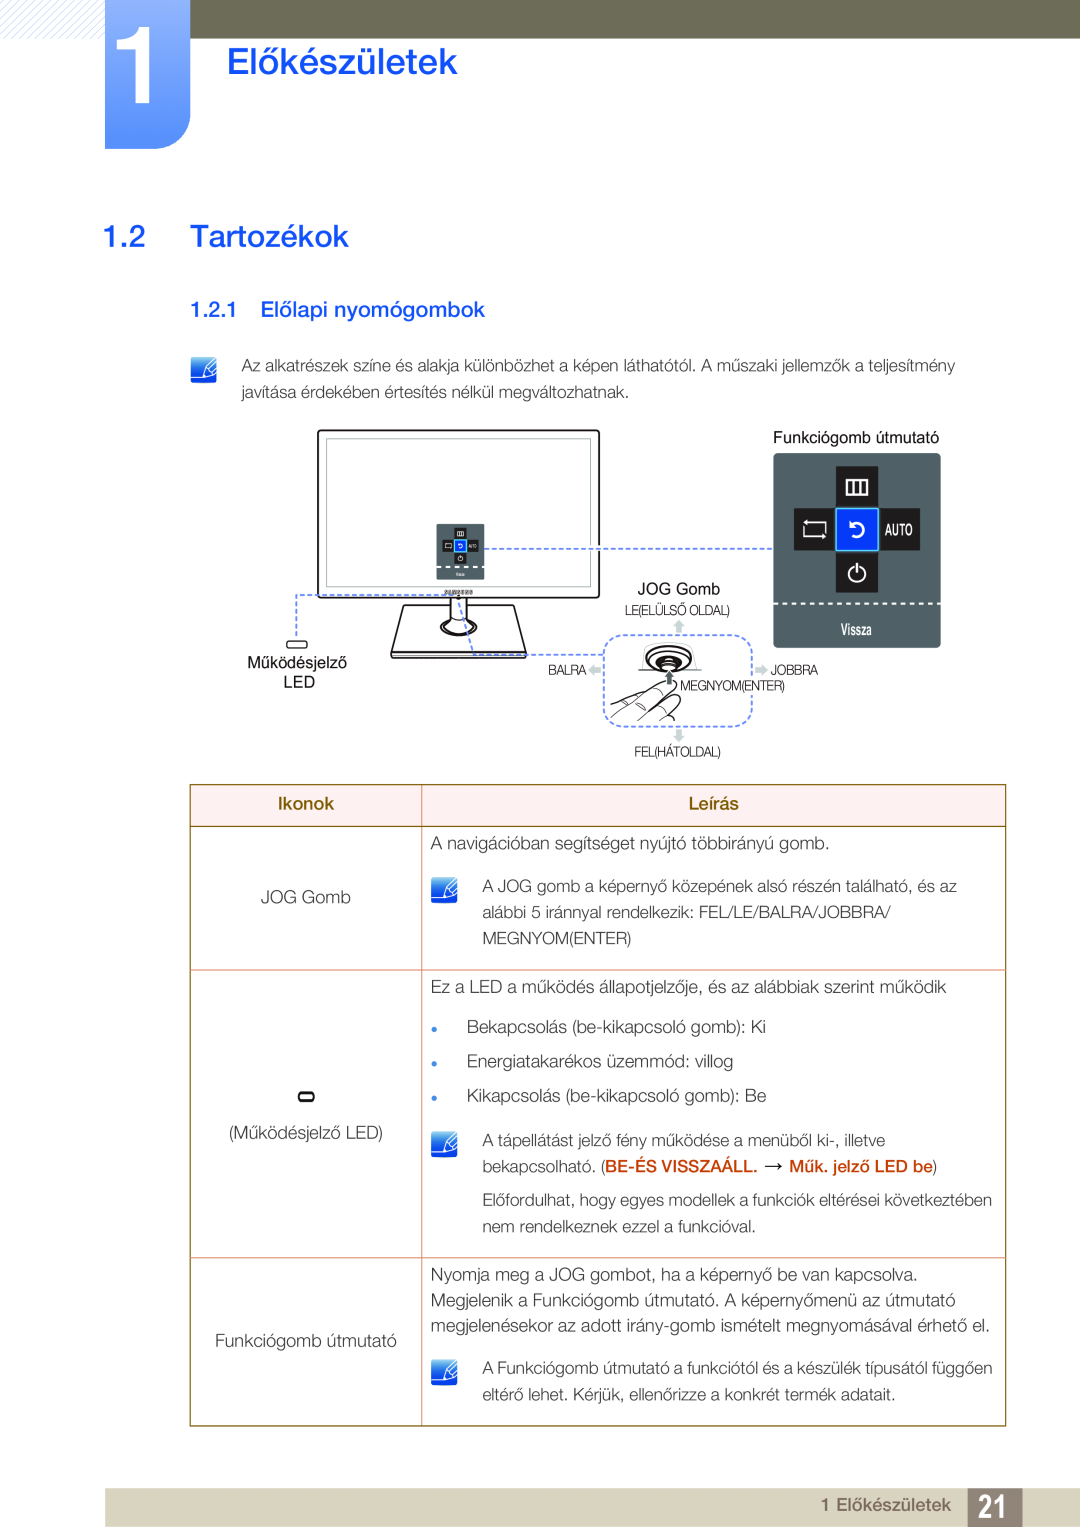 Samsung LS24C550VL/EN manual Tartozékok, 1.2.1 Előlapi nyomógombok, 1 Előkészületek, Ikonok, Leírás, Műk. jelző LED be 